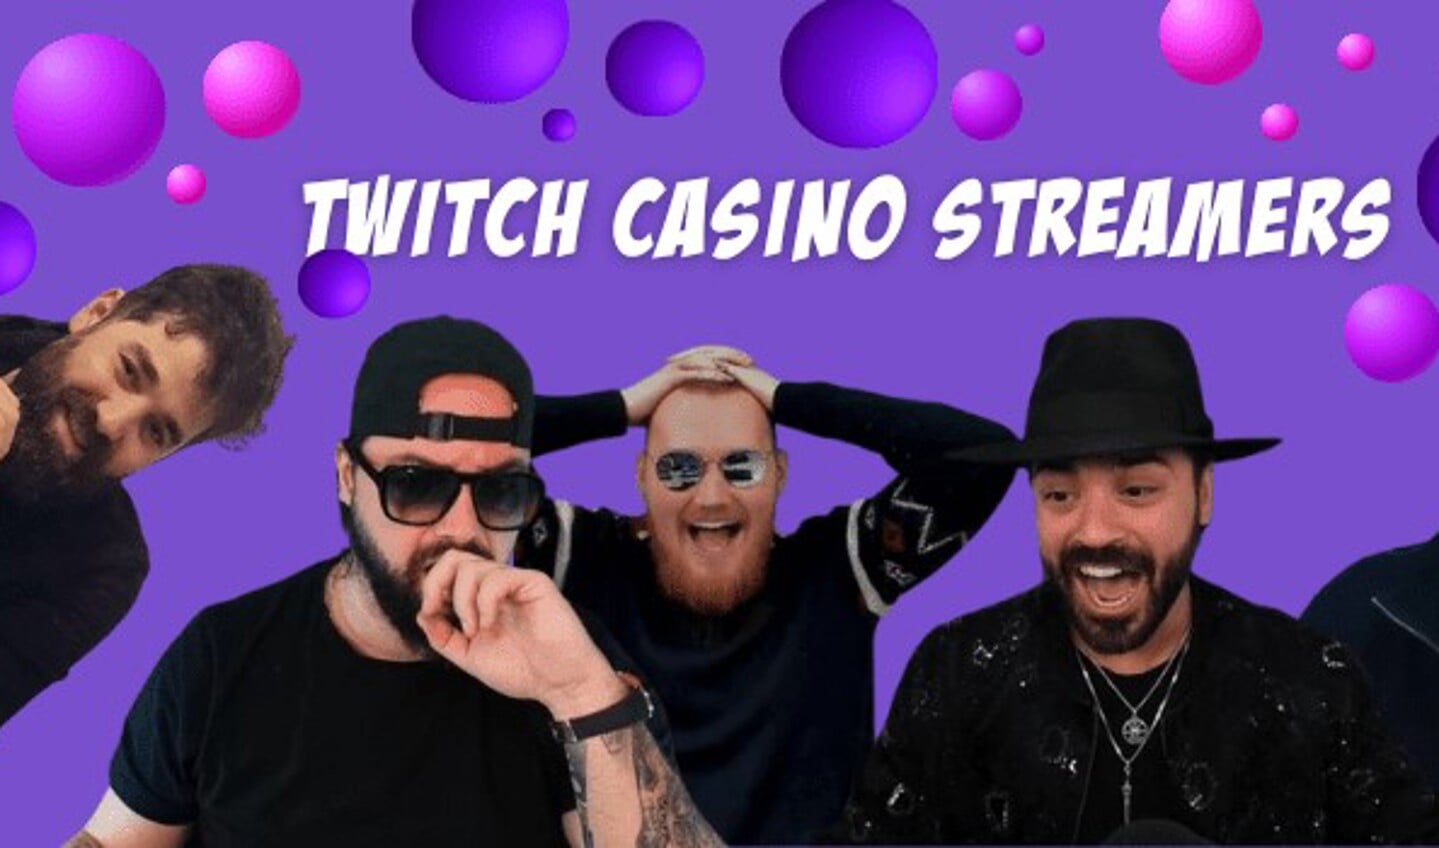 Alt: Twitch Casino Streamers